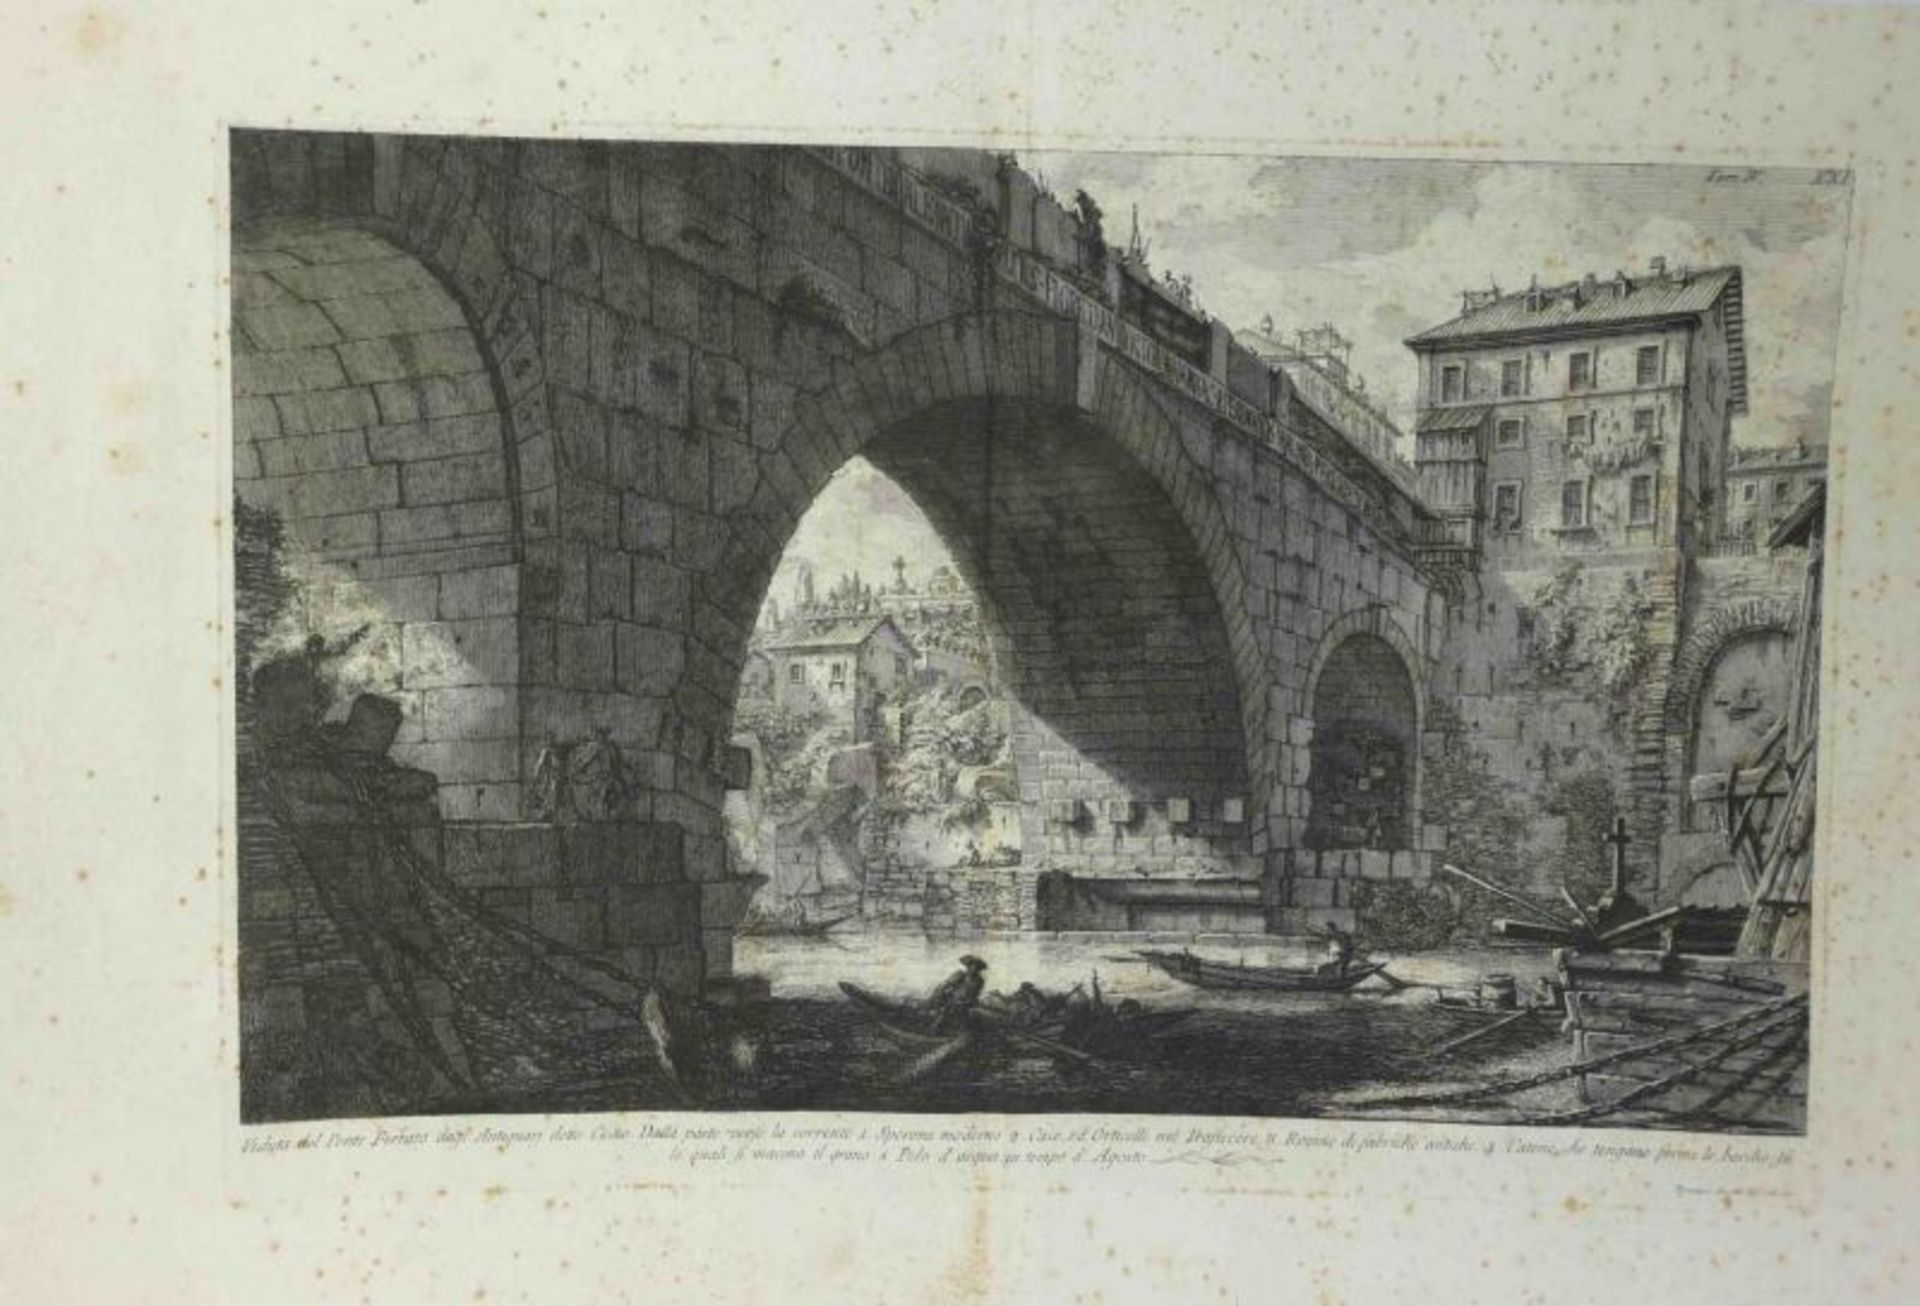 Piranesi, Giovanni-Battista "Veduta del Ponte Ferrato dagl' Antiquari detto Cestio" (Mogliano 1720- - Image 3 of 3